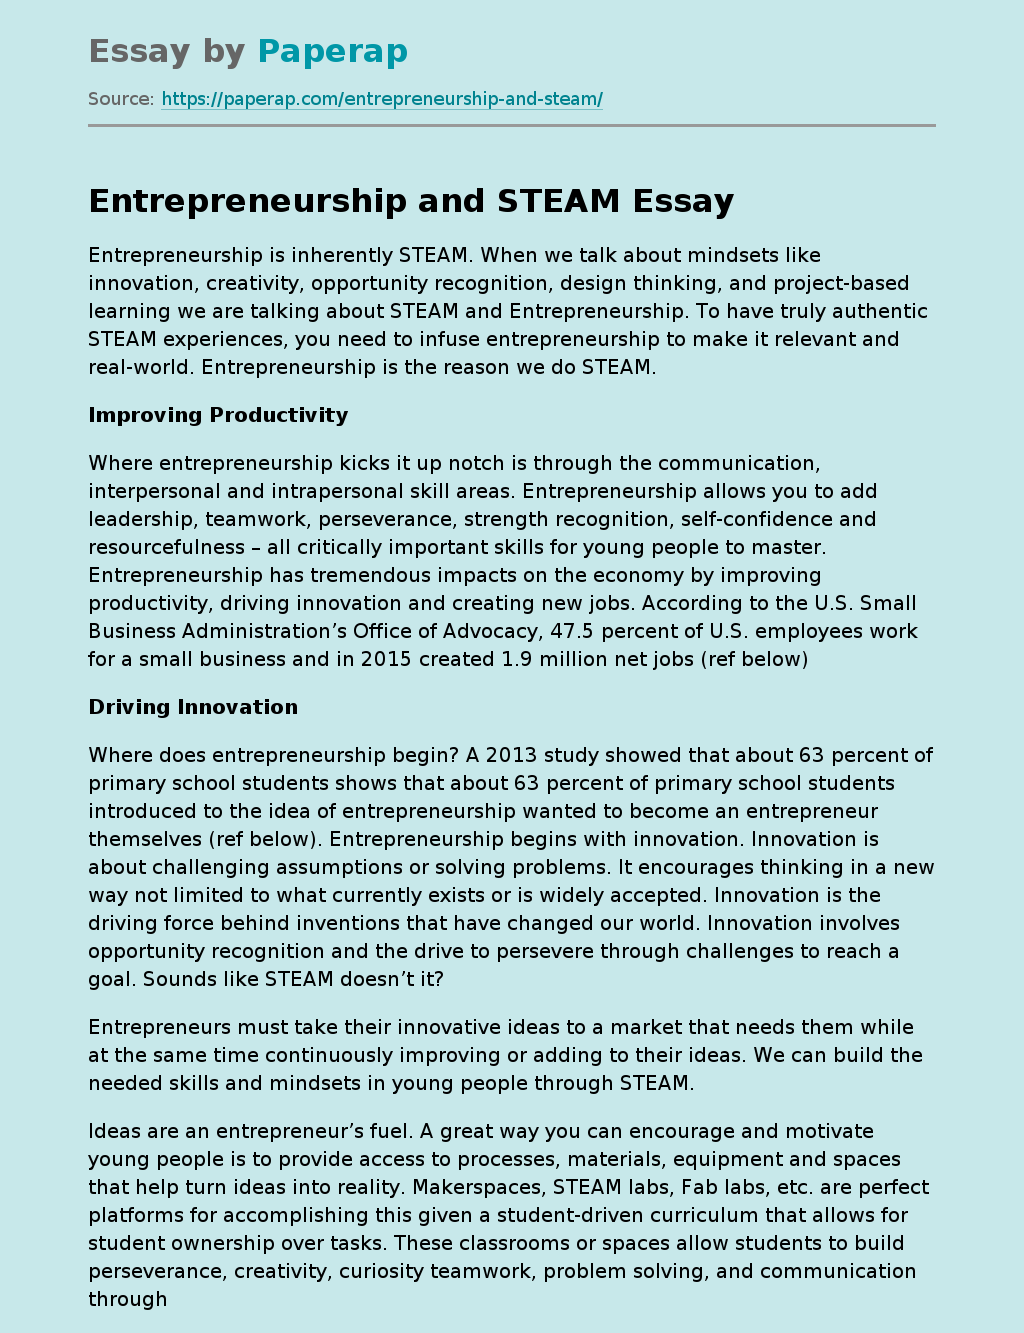 title for entrepreneurship essay